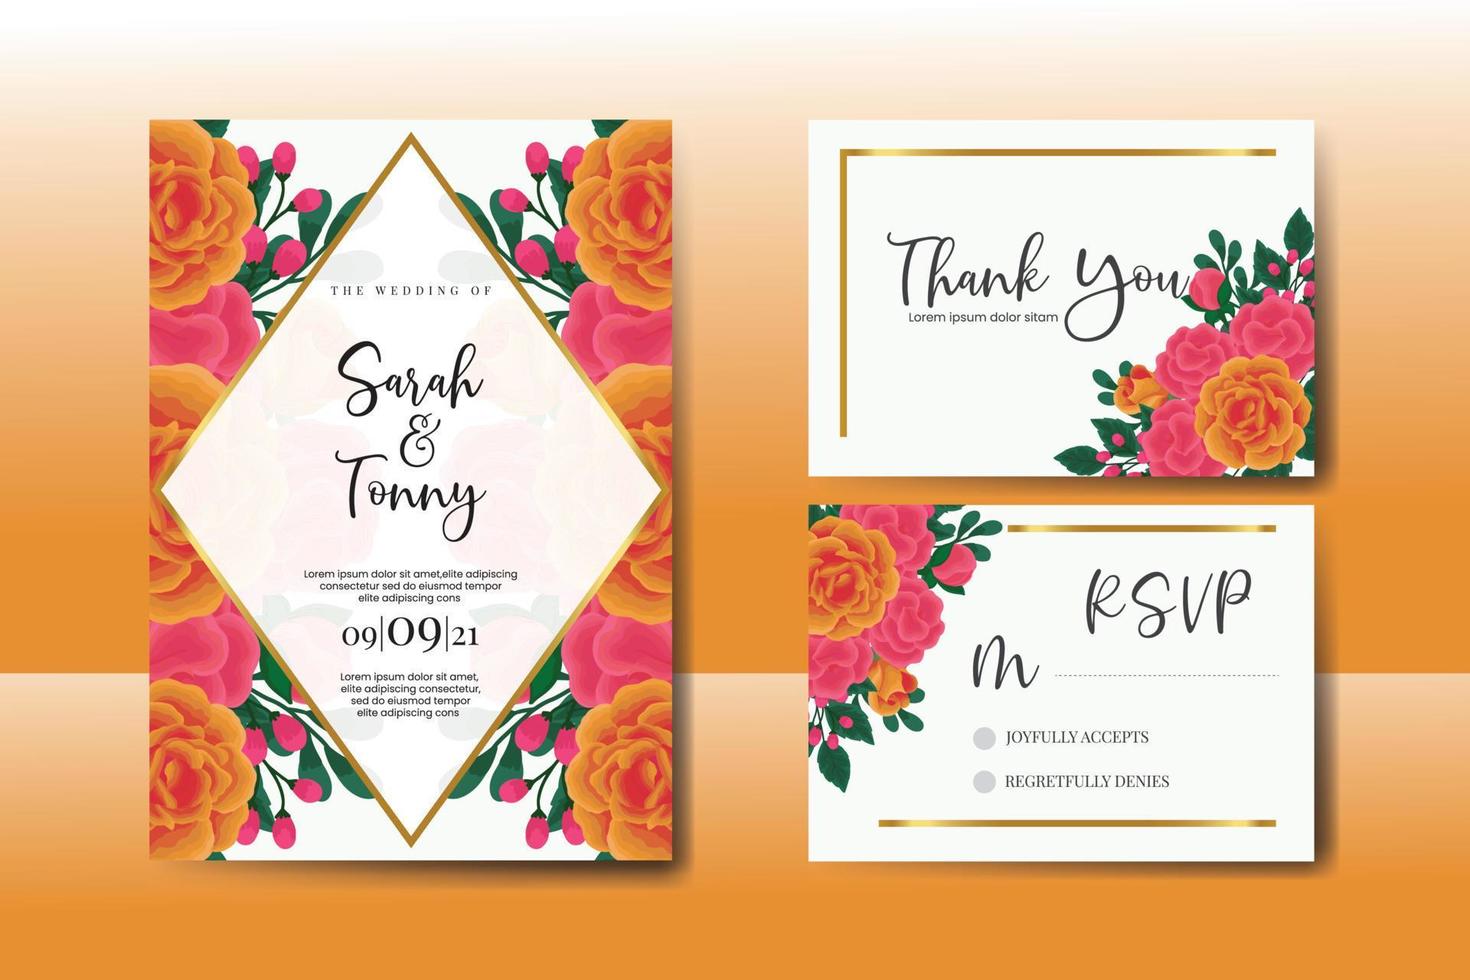 Boda invitación marco colocar, floral acuarela digital mano dibujado naranja Rosa flor diseño invitación tarjeta modelo vector